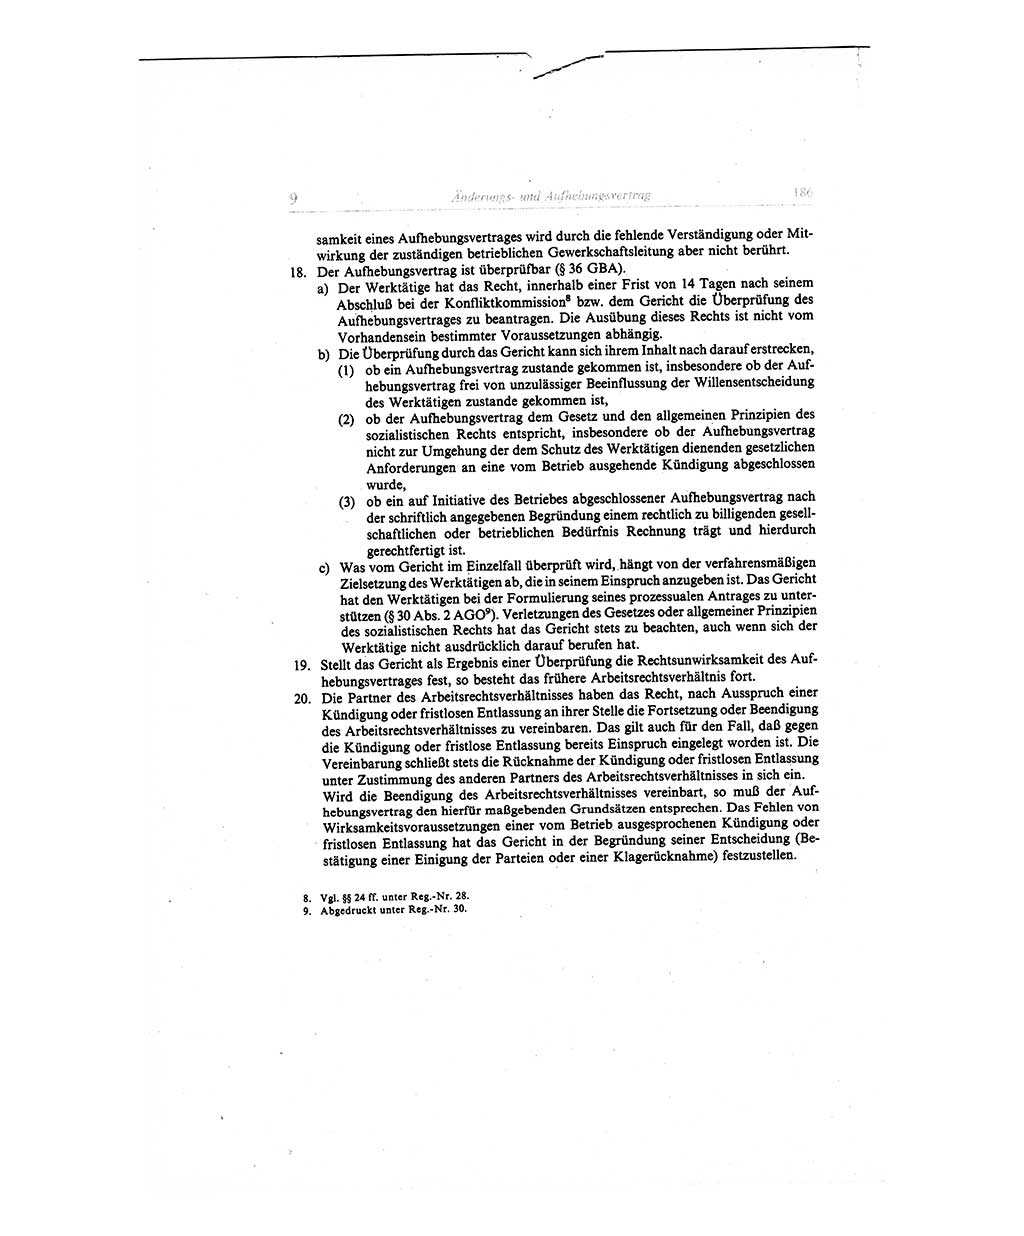 Gesetzbuch der Arbeit (GBA) und andere ausgewählte rechtliche Bestimmungen [Deutsche Demokratische Republik (DDR)] 1968, Seite 186 (GBA DDR 1968, S. 186)